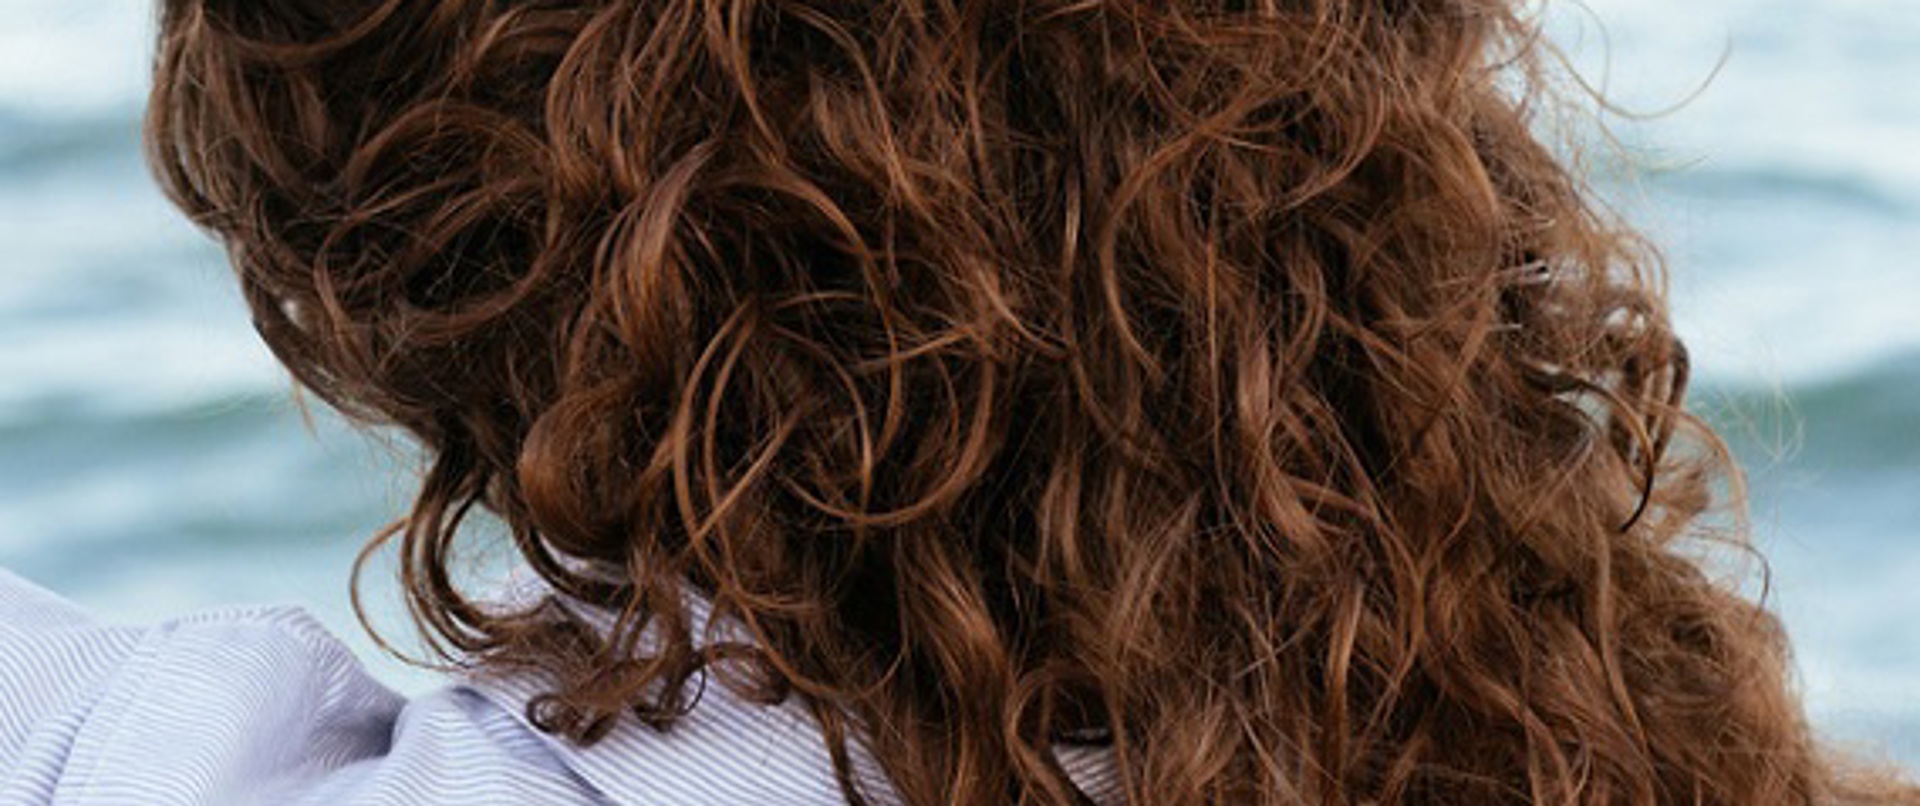 Kıvırcık doğal saçlara özel saç bakımı nasıl olmalı?